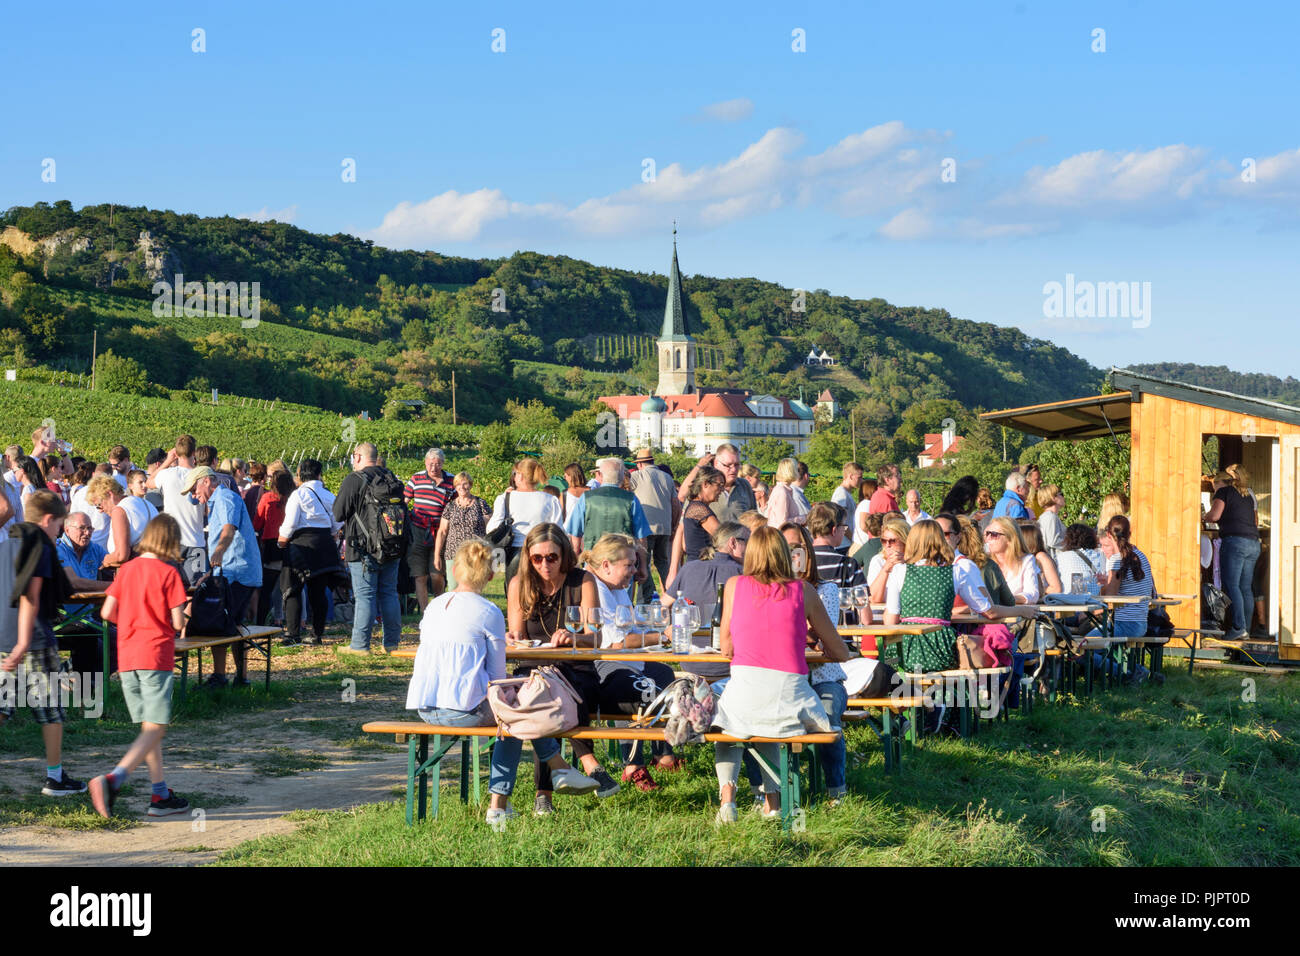 Gumpoldskirchen : Deutschordensschloss (Ordonnance allemande Château), vigne, bar au festival 'Genussmeile' le long de la 1ère ligne de chemin de randonnée de l'eau vienne, winegro Banque D'Images